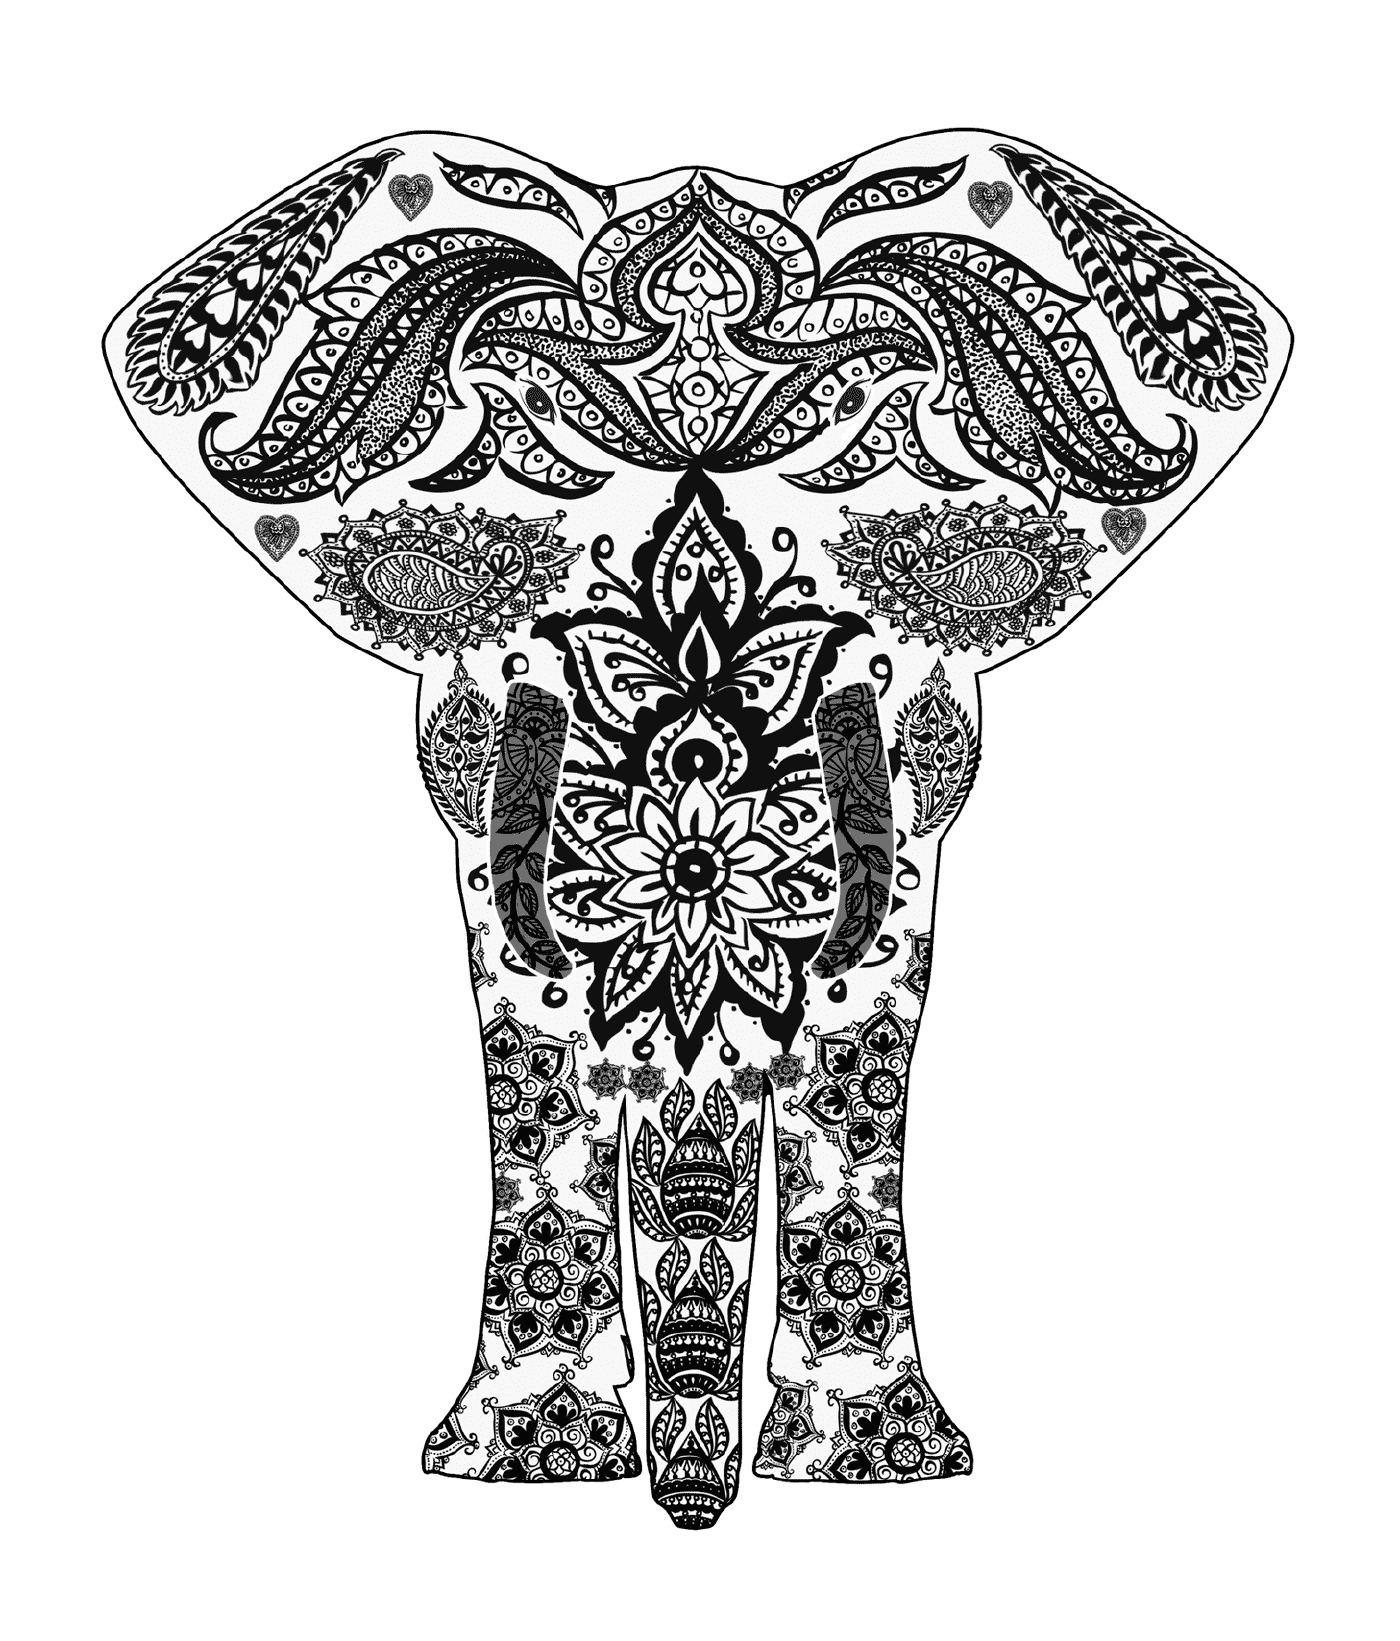  Elefante con patrones complejos 